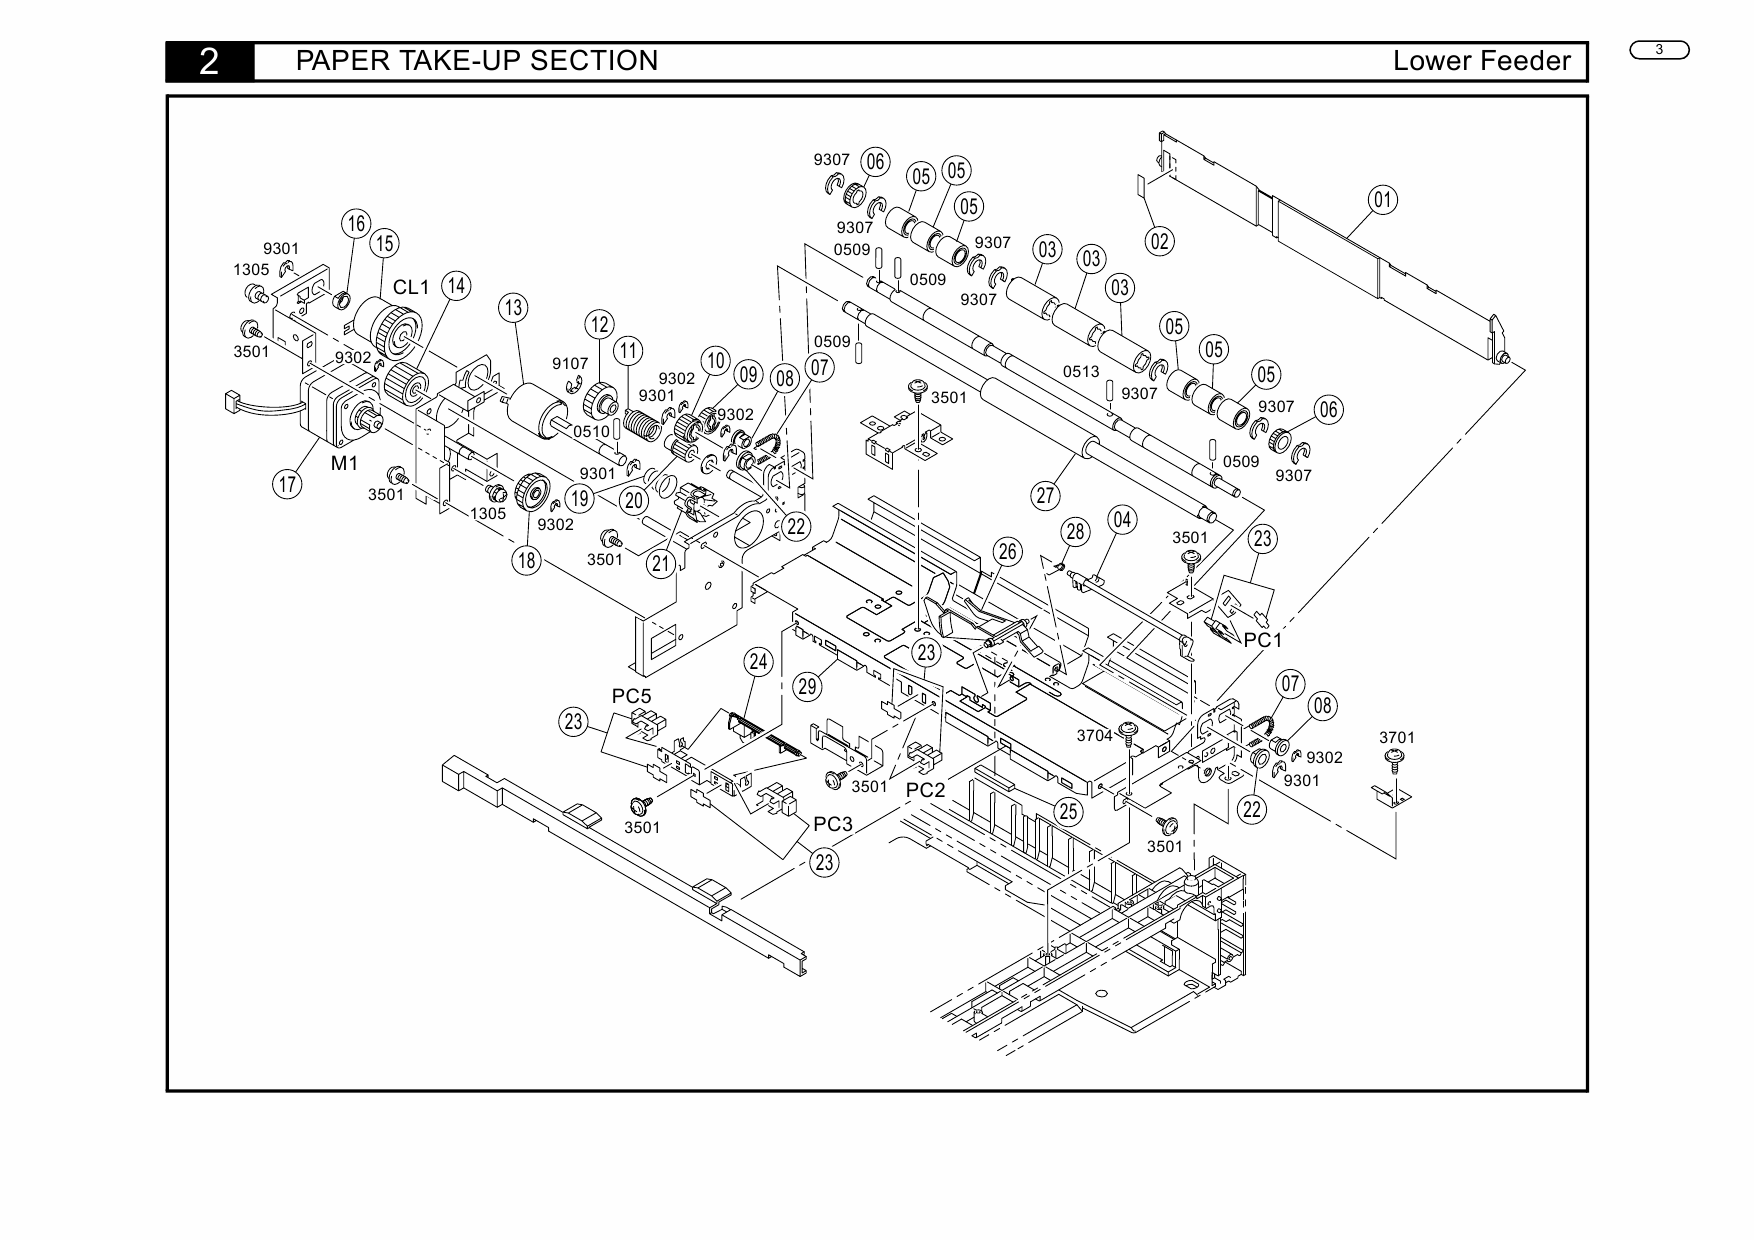 Konica-Minolta magicolor 7300 Lower-Feeder Parts Manual-3